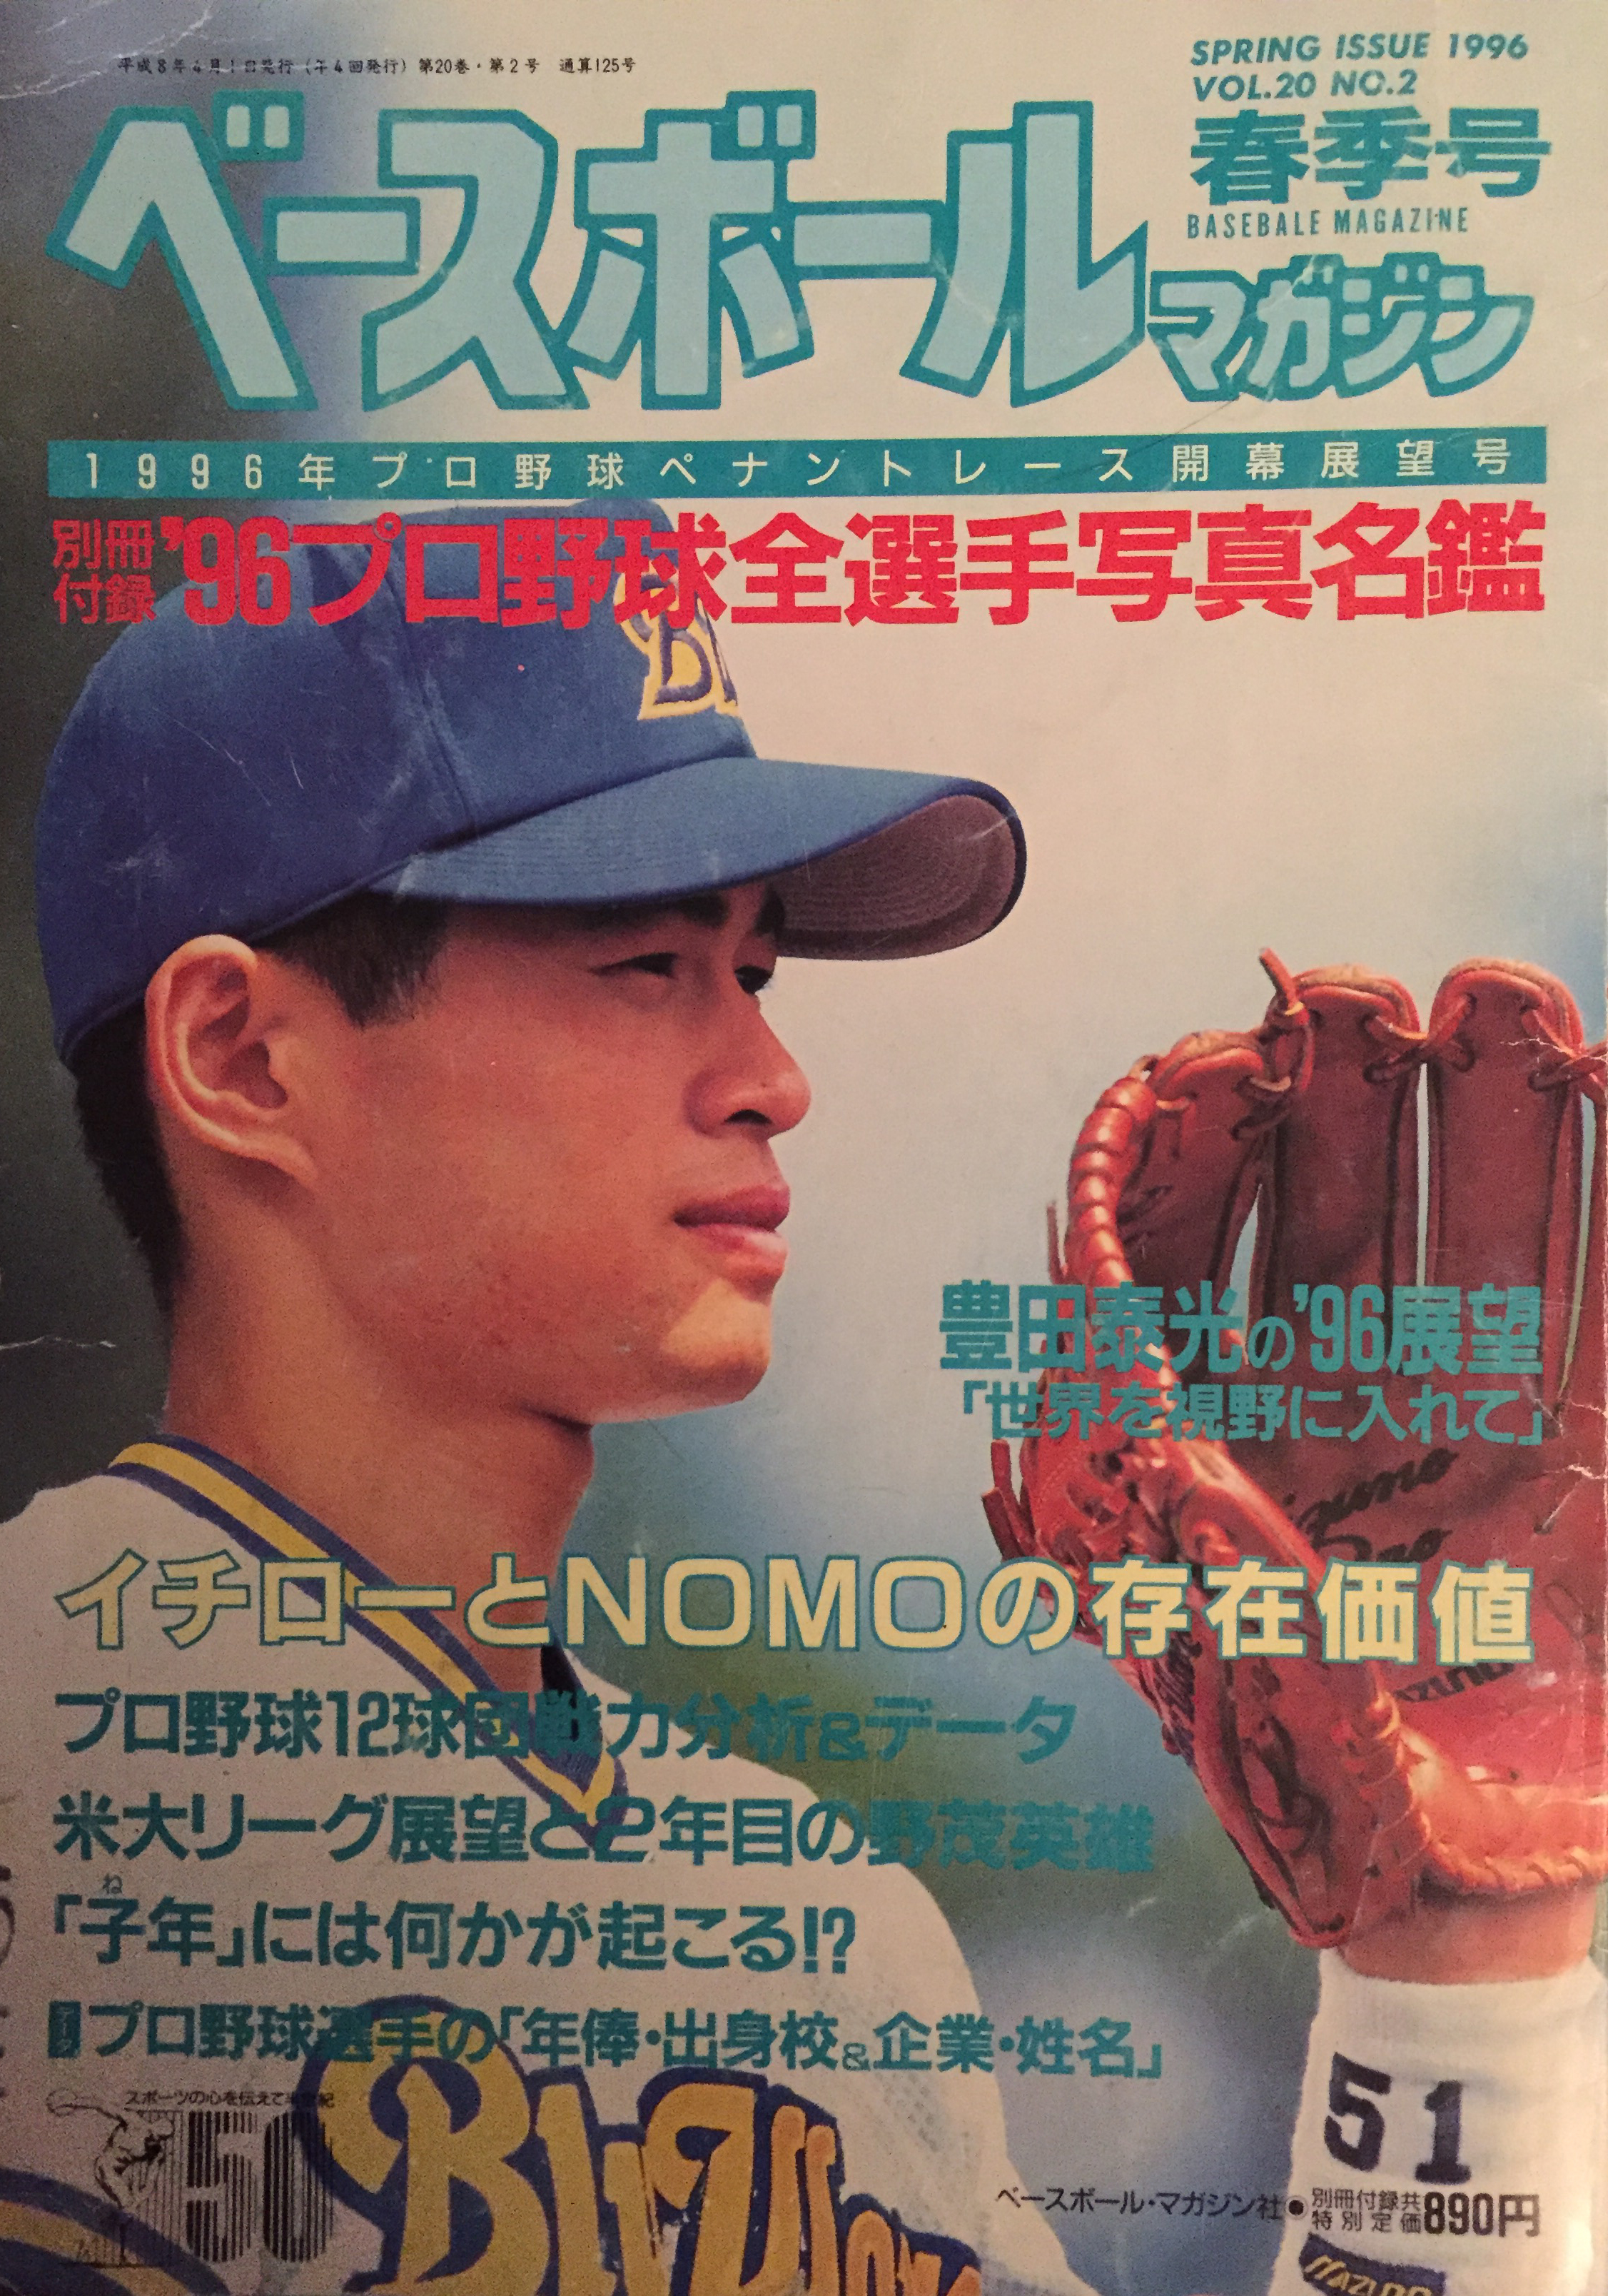 MLB/ Mariners give Ichiro lifetime achievement award  The Asahi Shimbun:  Breaking News, Japan News and Analysis